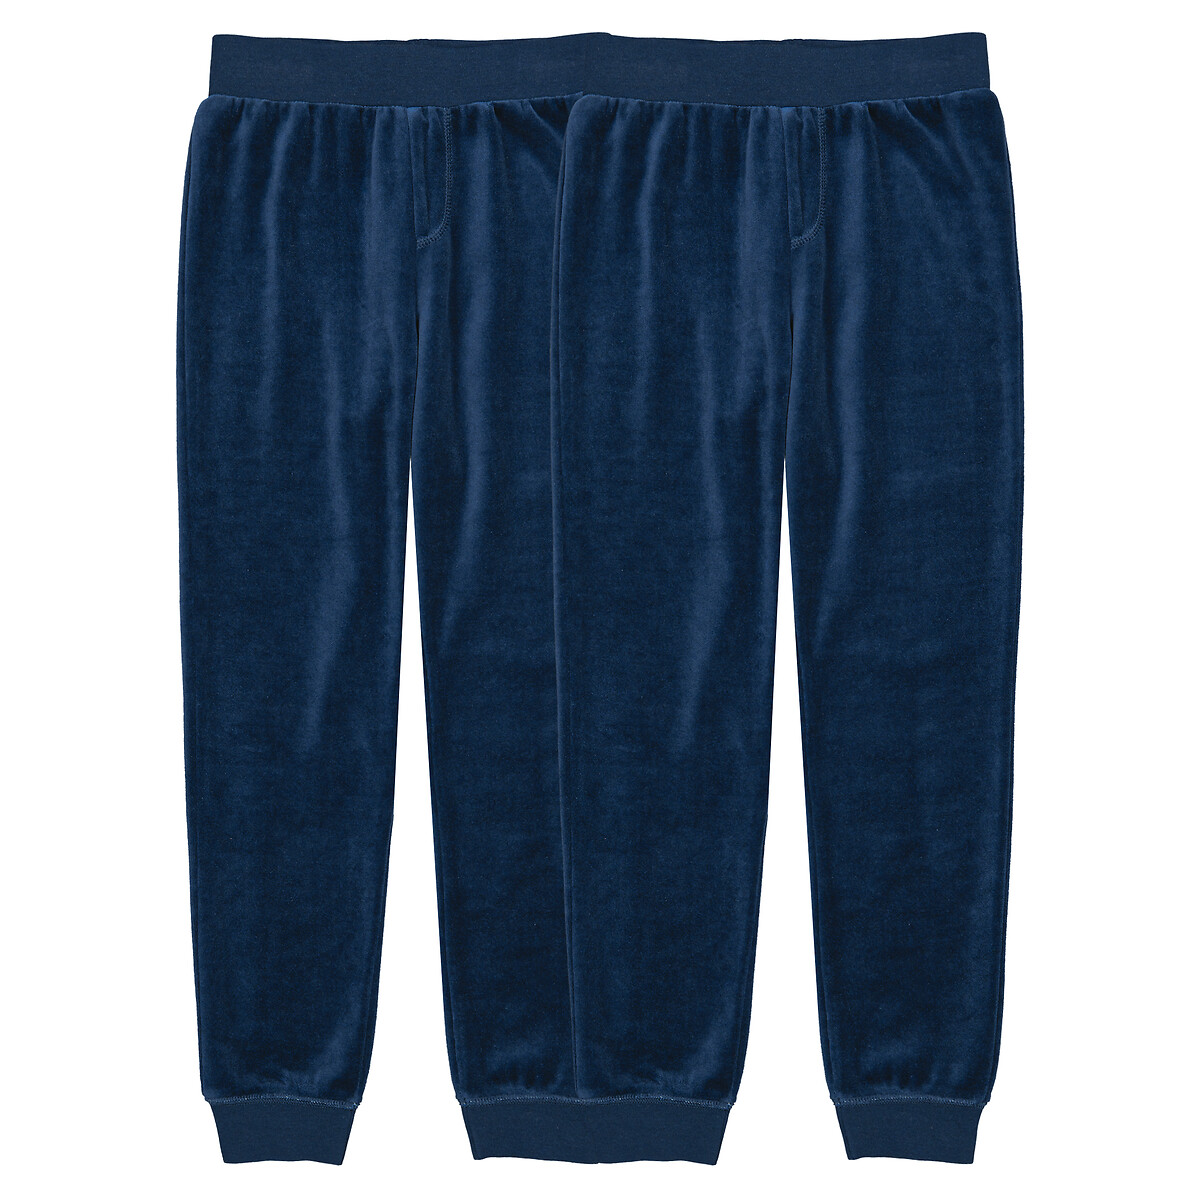 Комплект из двух брюк пижамных из велюра 3 года - 94 см синий комплект из четырех брюк пижамных из джерси 4 года 102 см синий